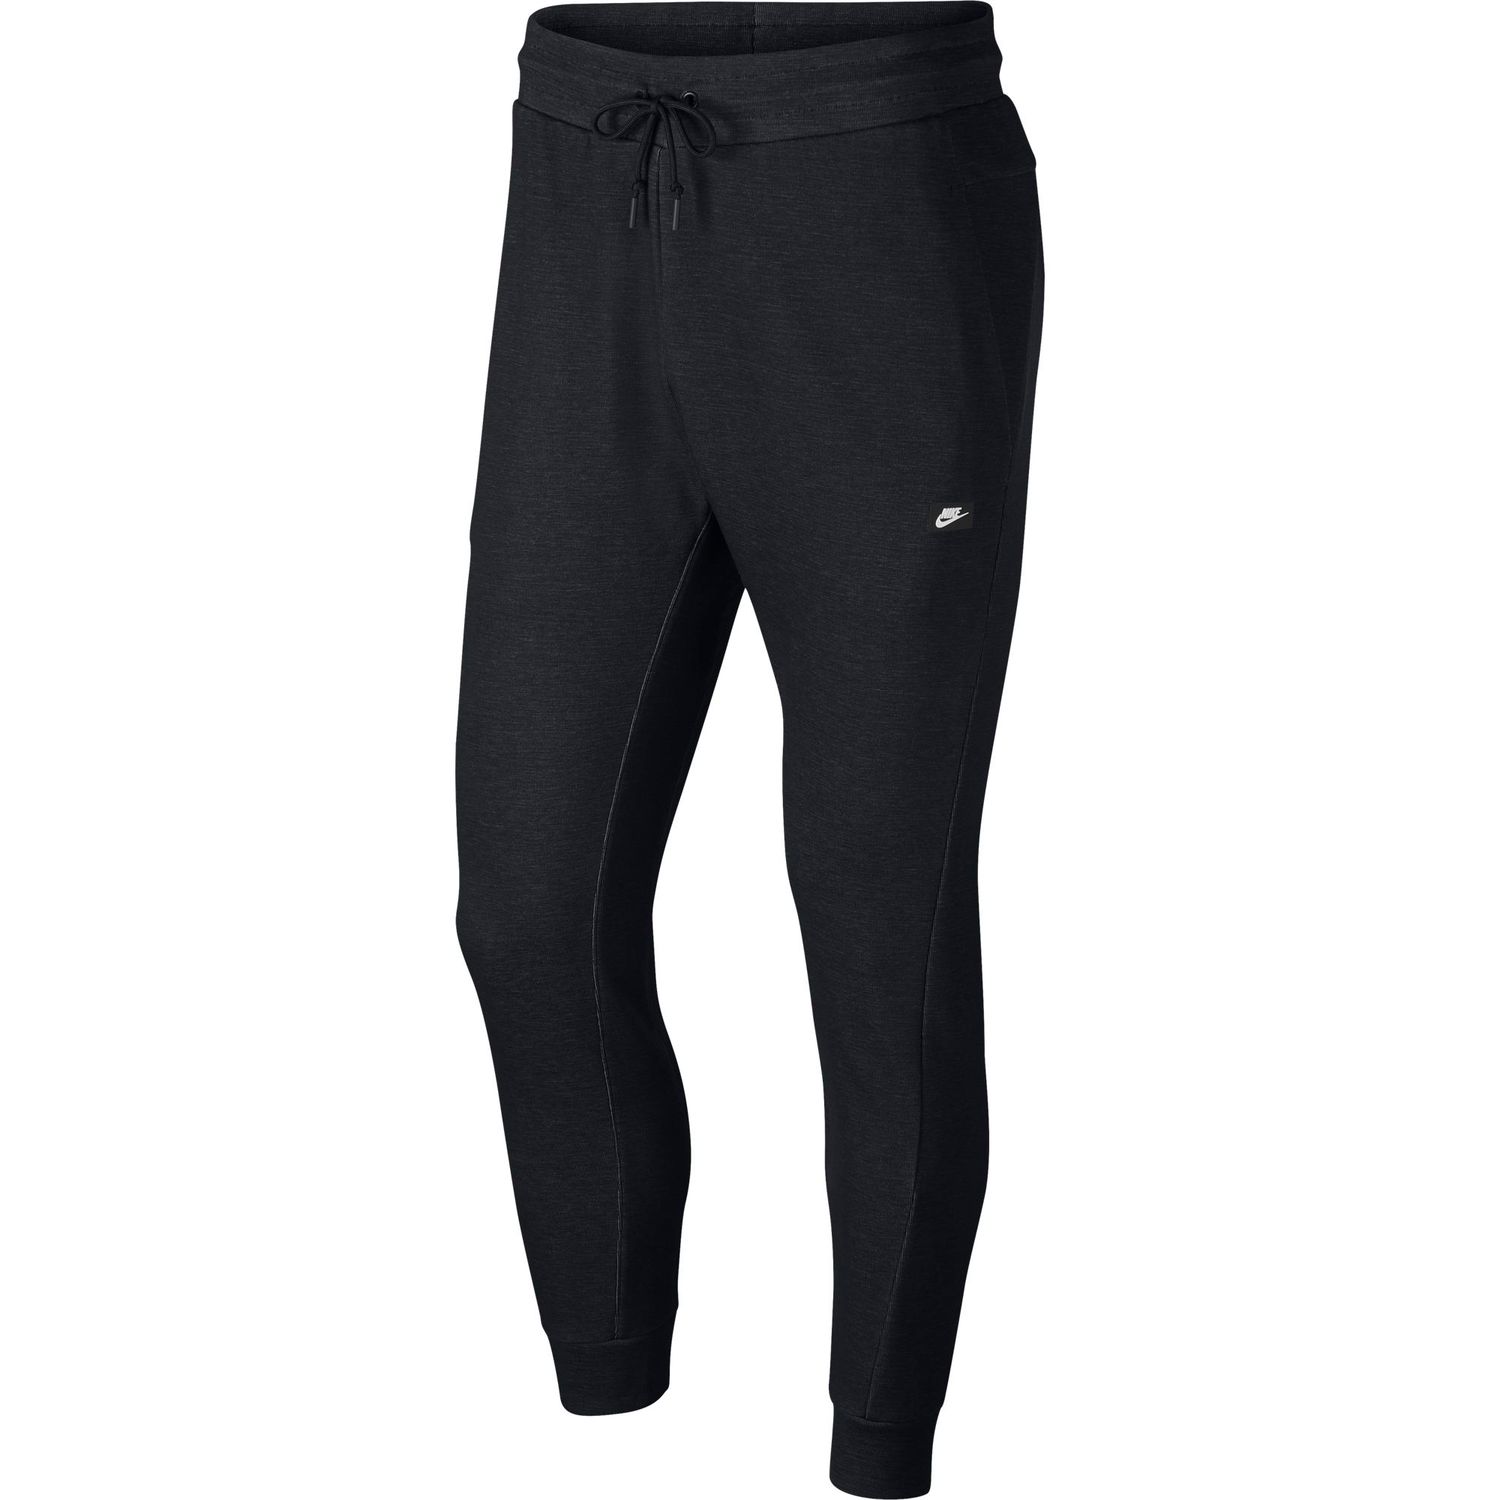 Men's Nike Optic Jogger Pants